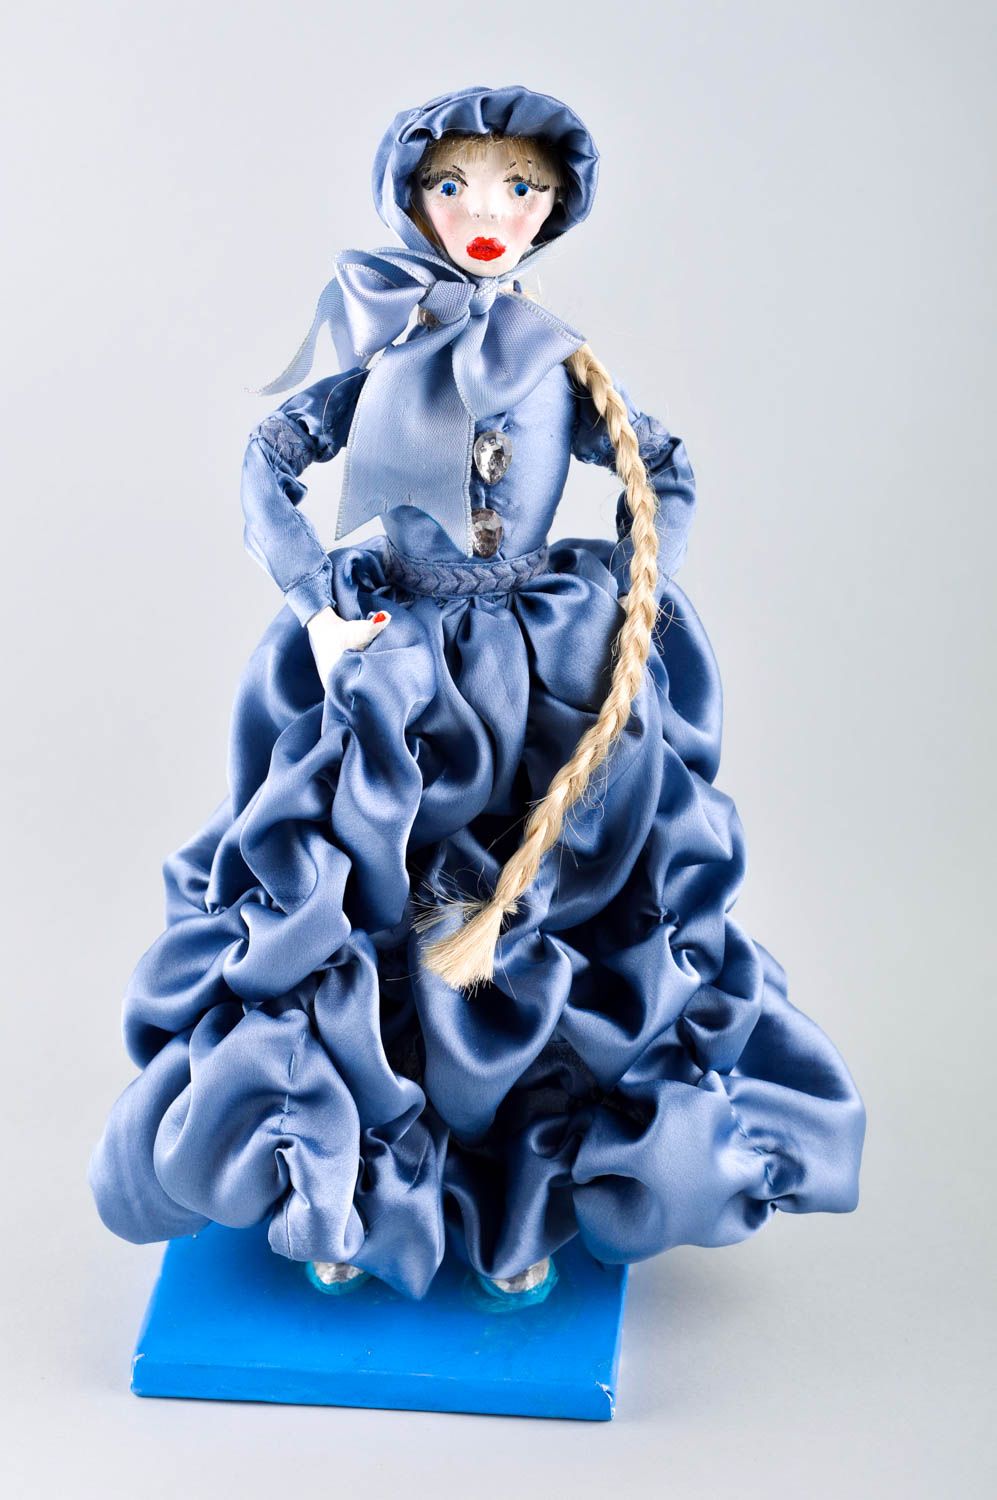 Puppe handgemacht Deco Puppe Geschenk Idee blau Kinder Spielzeug blau stilvoll foto 2